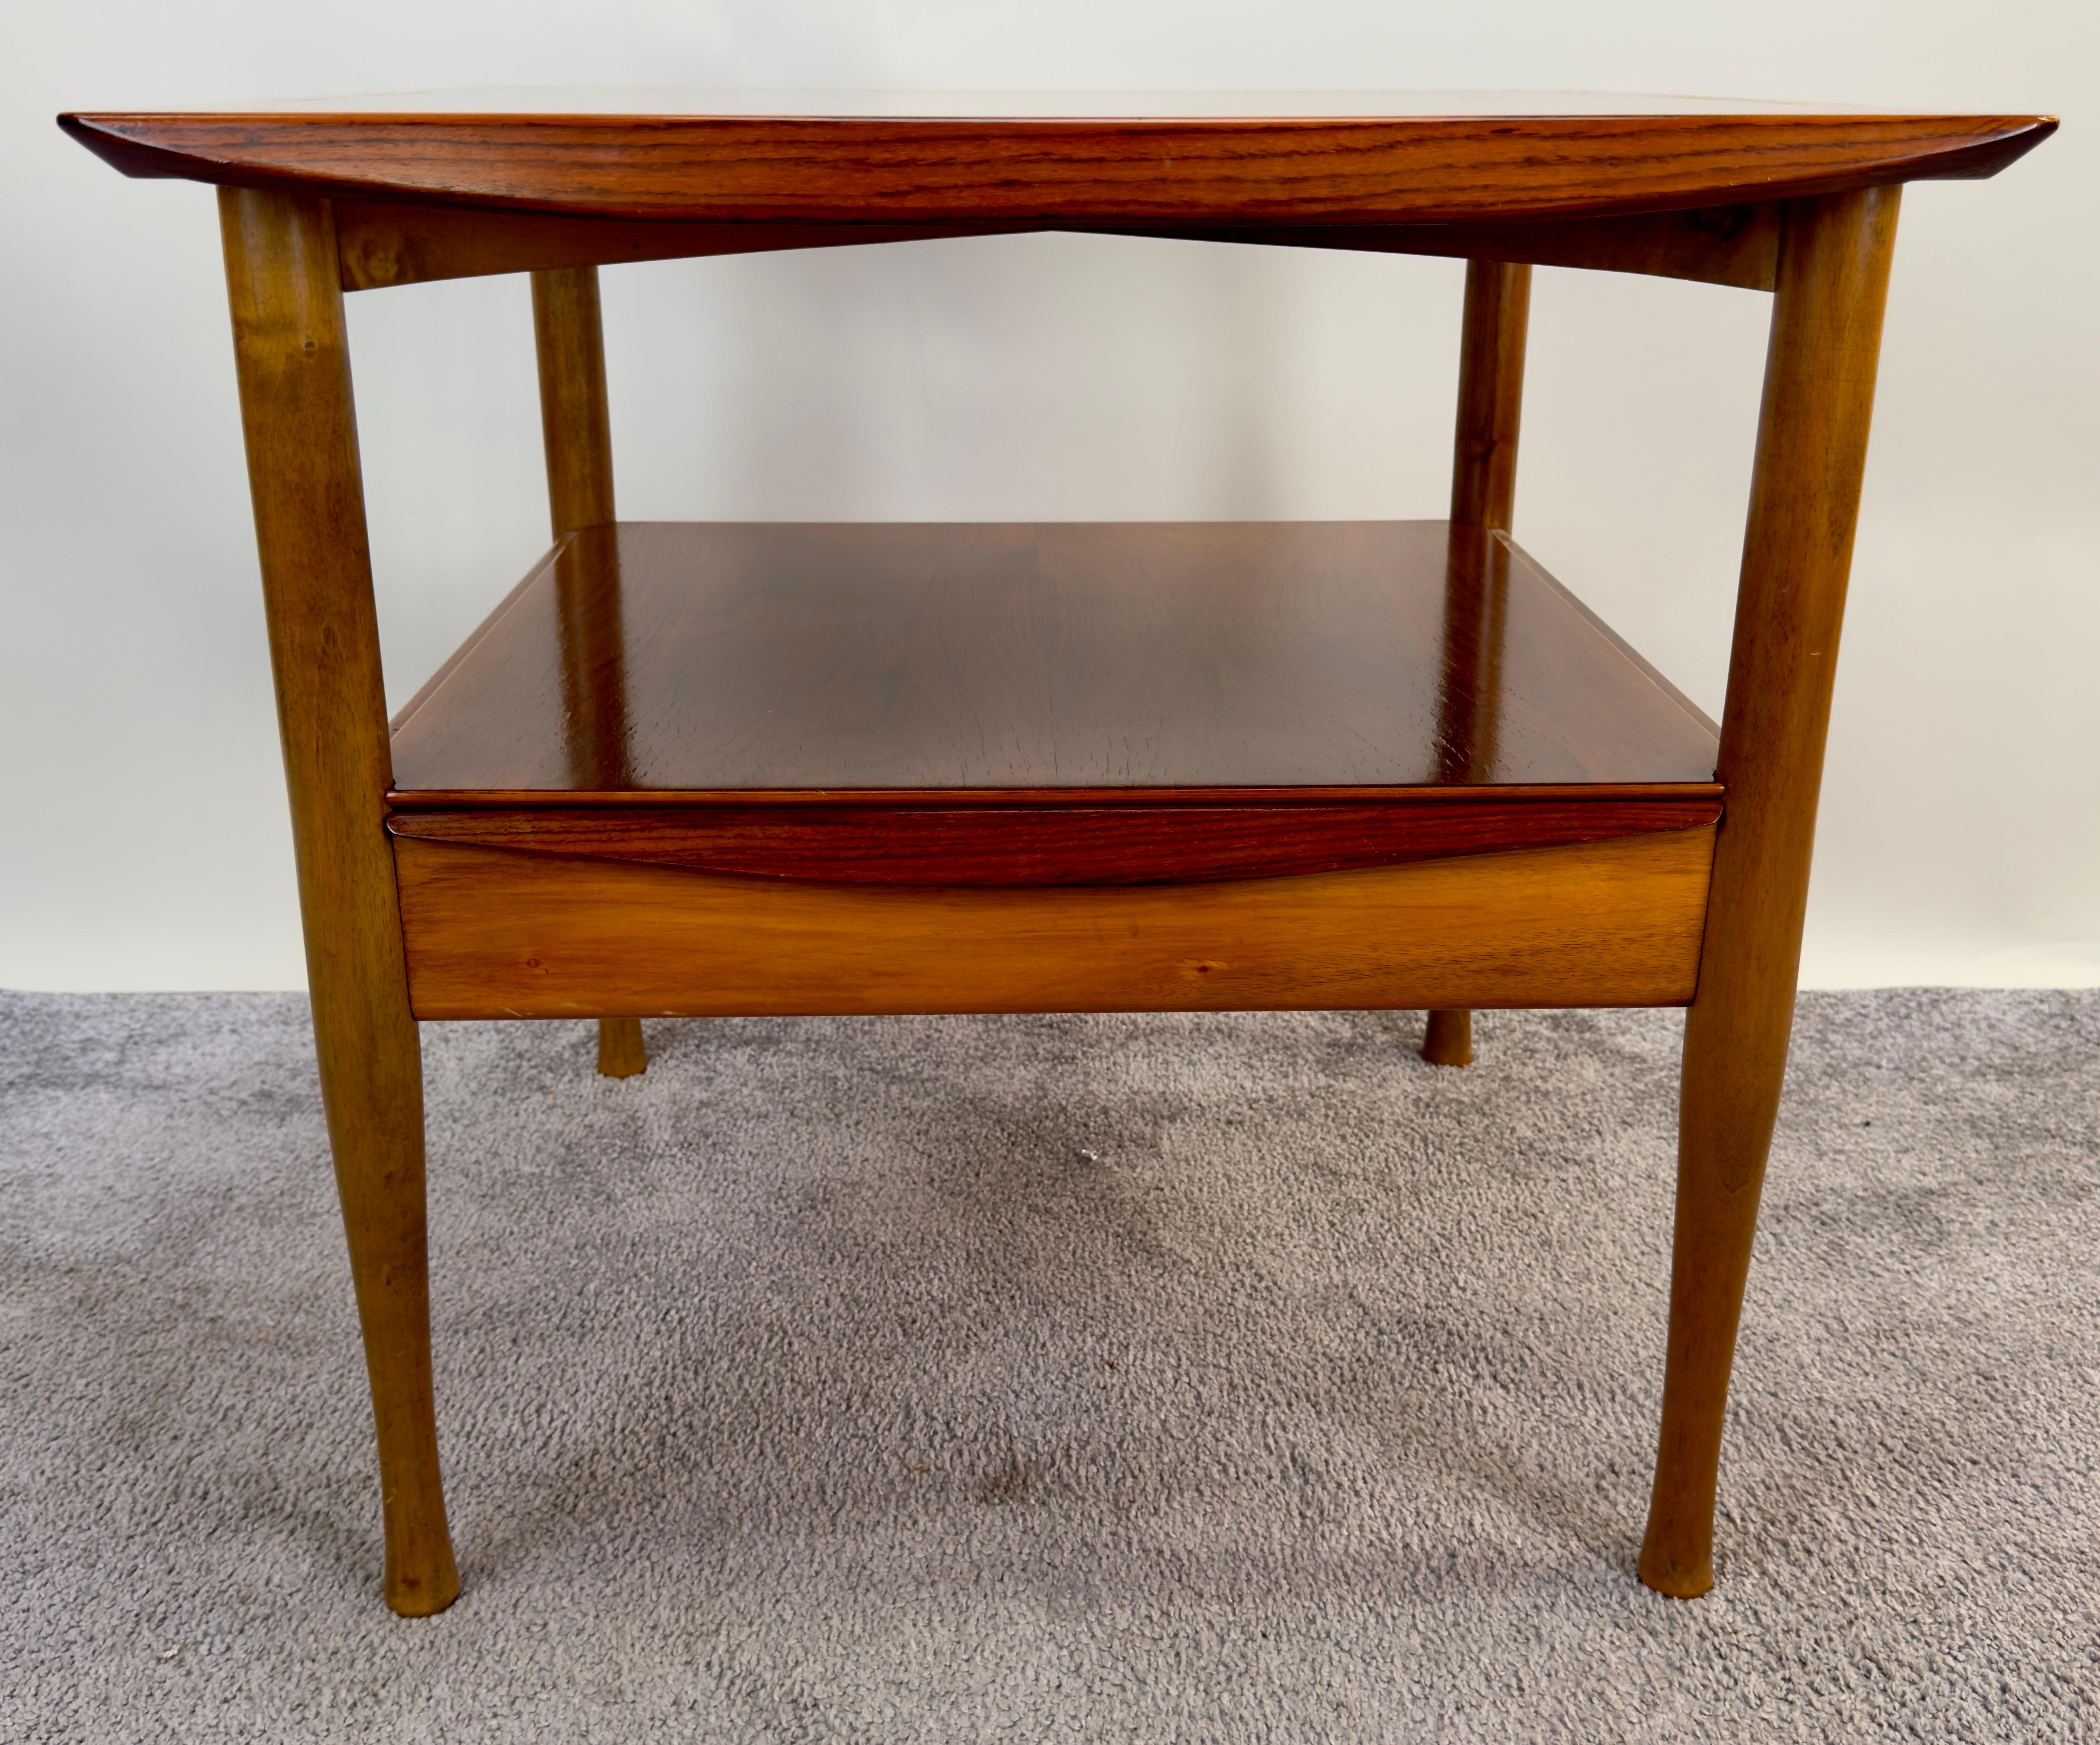 Swedish Mid Century Modern Scandinavian Teak Side Table with Shelf after Finn Juhl  For Sale